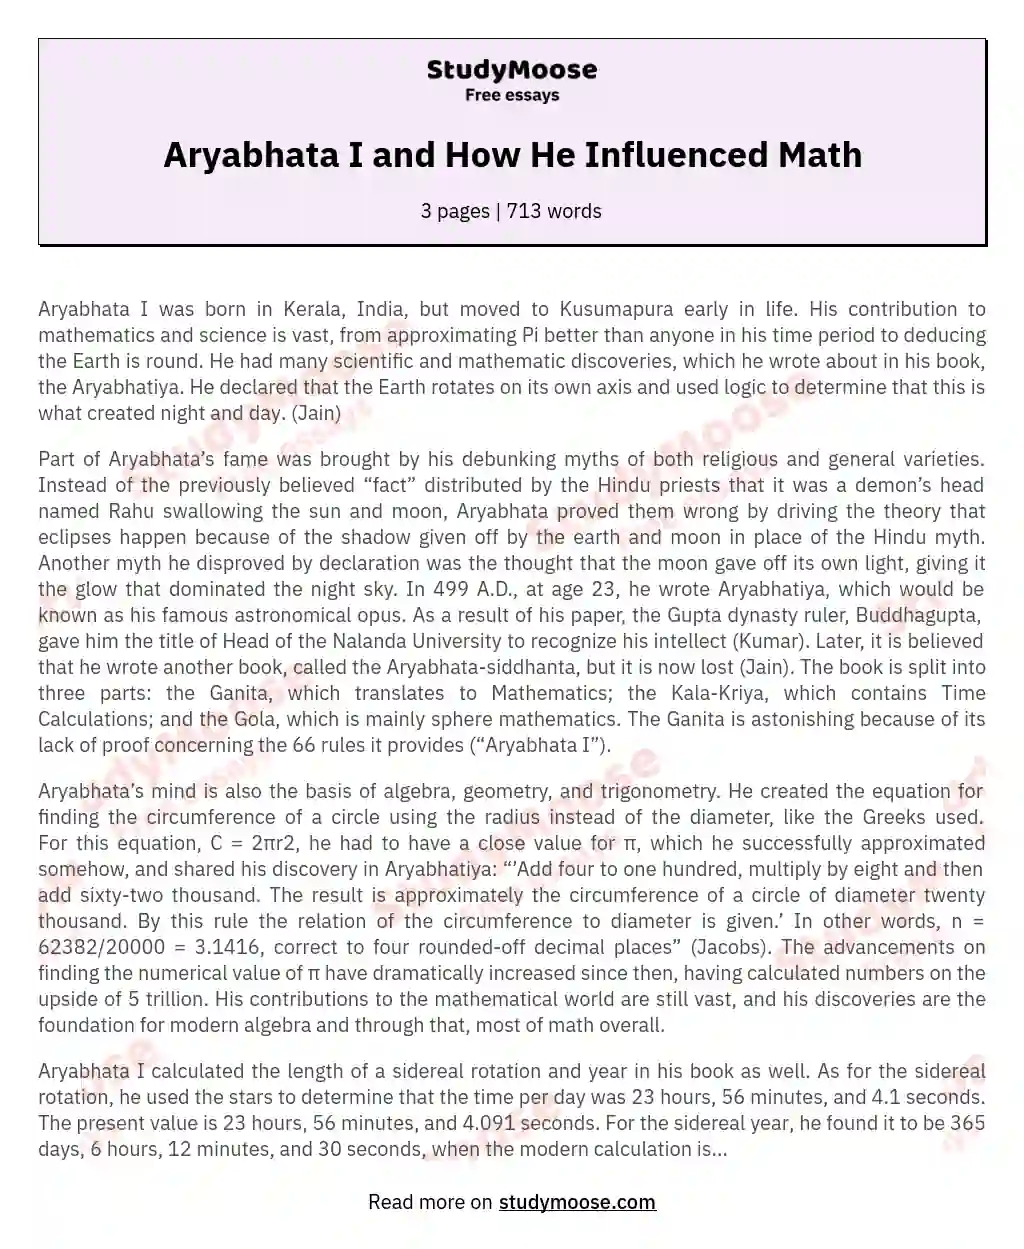 Aryabhata I and How He Influenced Math